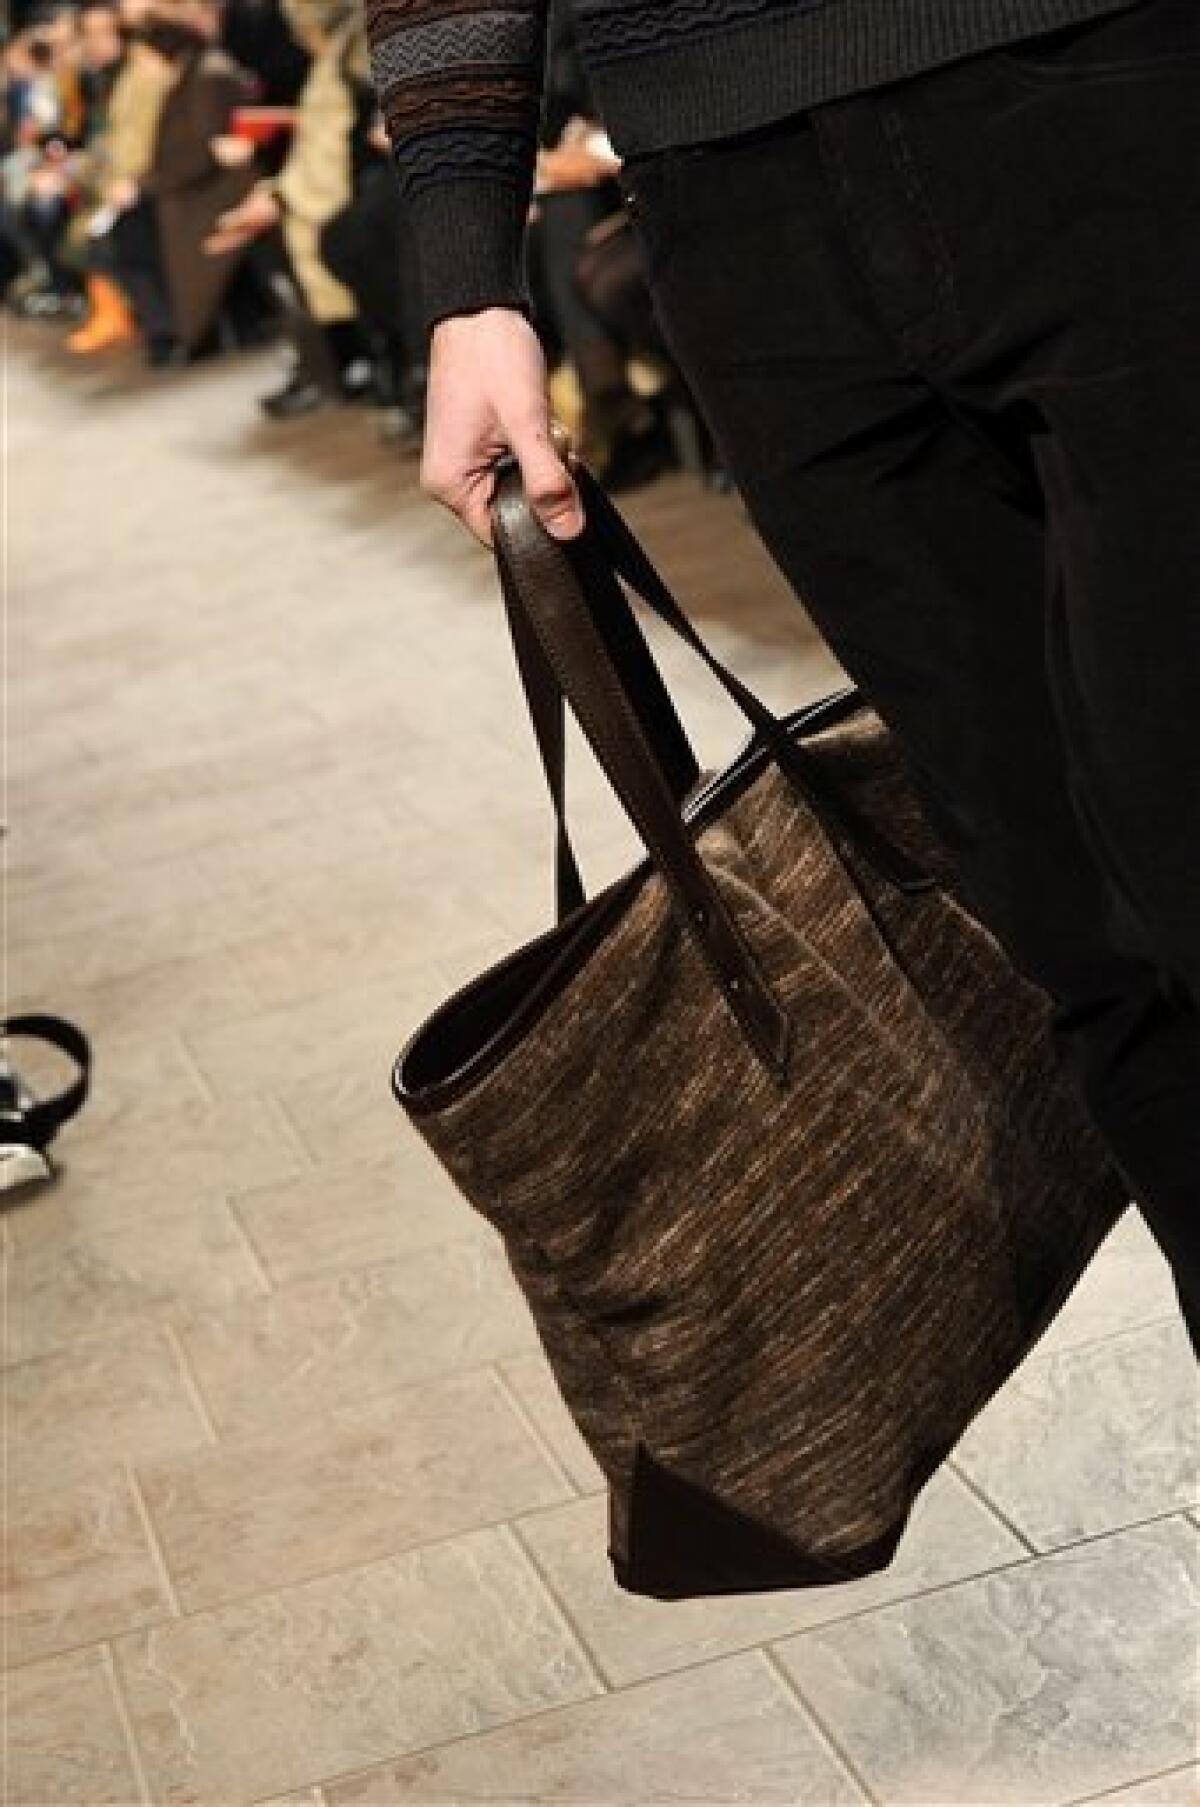 Louis Vuitton Men Bags Black Friday 2013 Sale